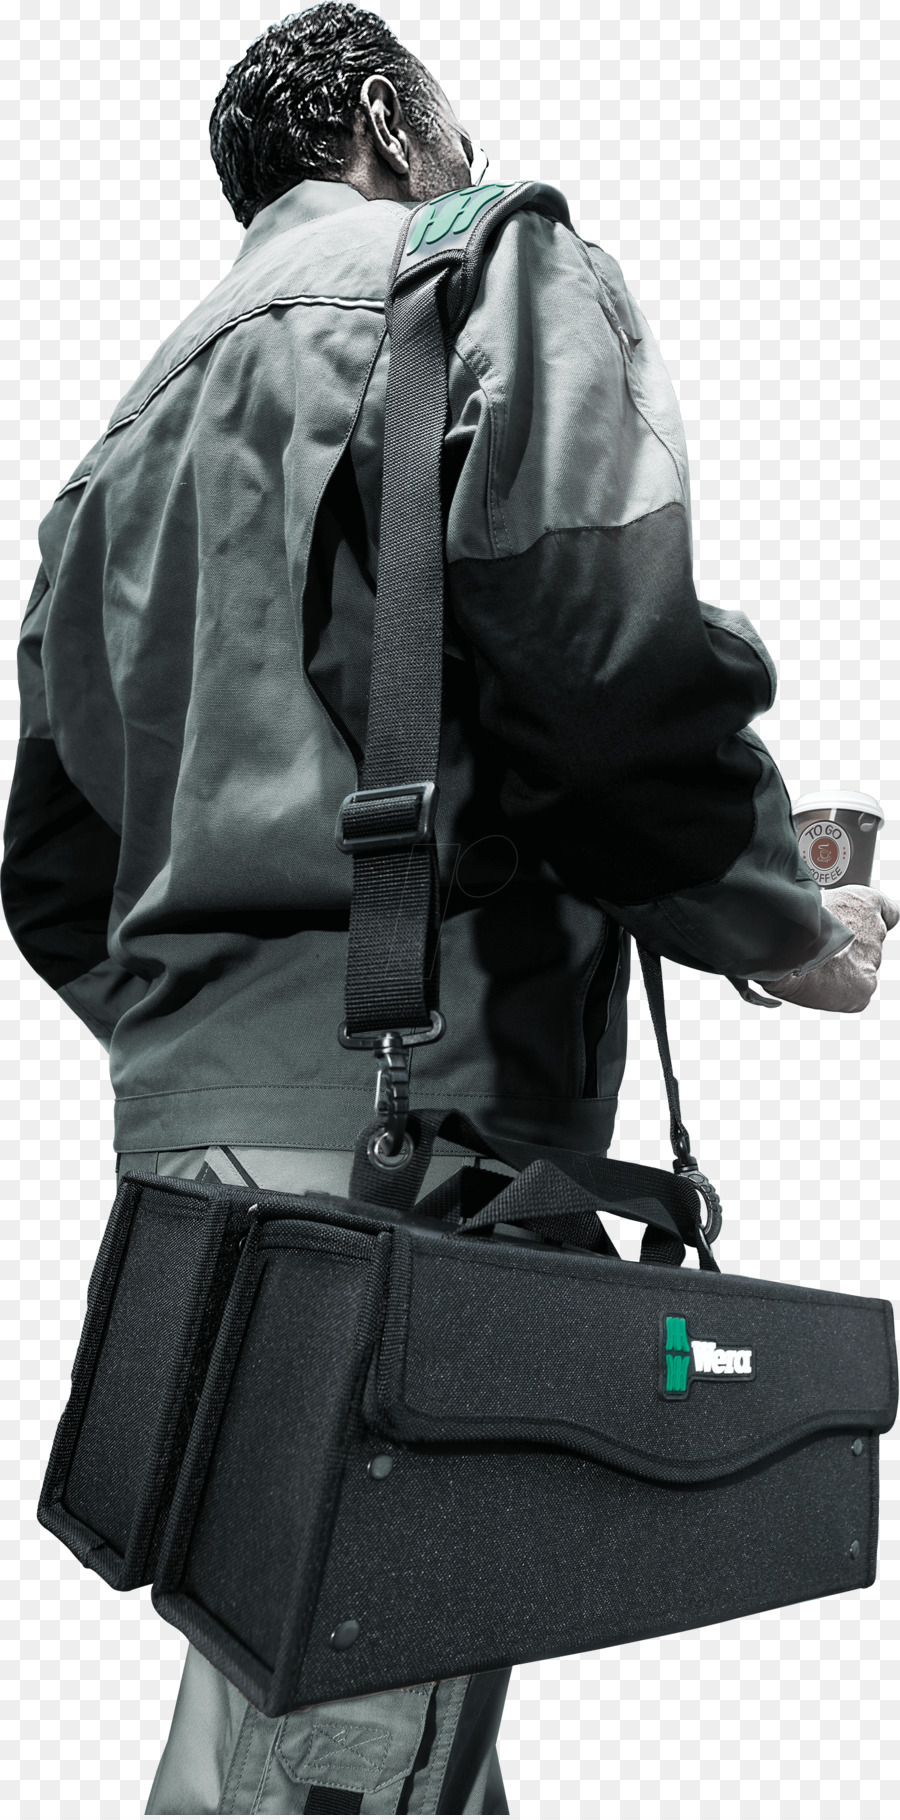 Tasche Security-Rucksack-Persönliche Schutzausrüstung - Tasche